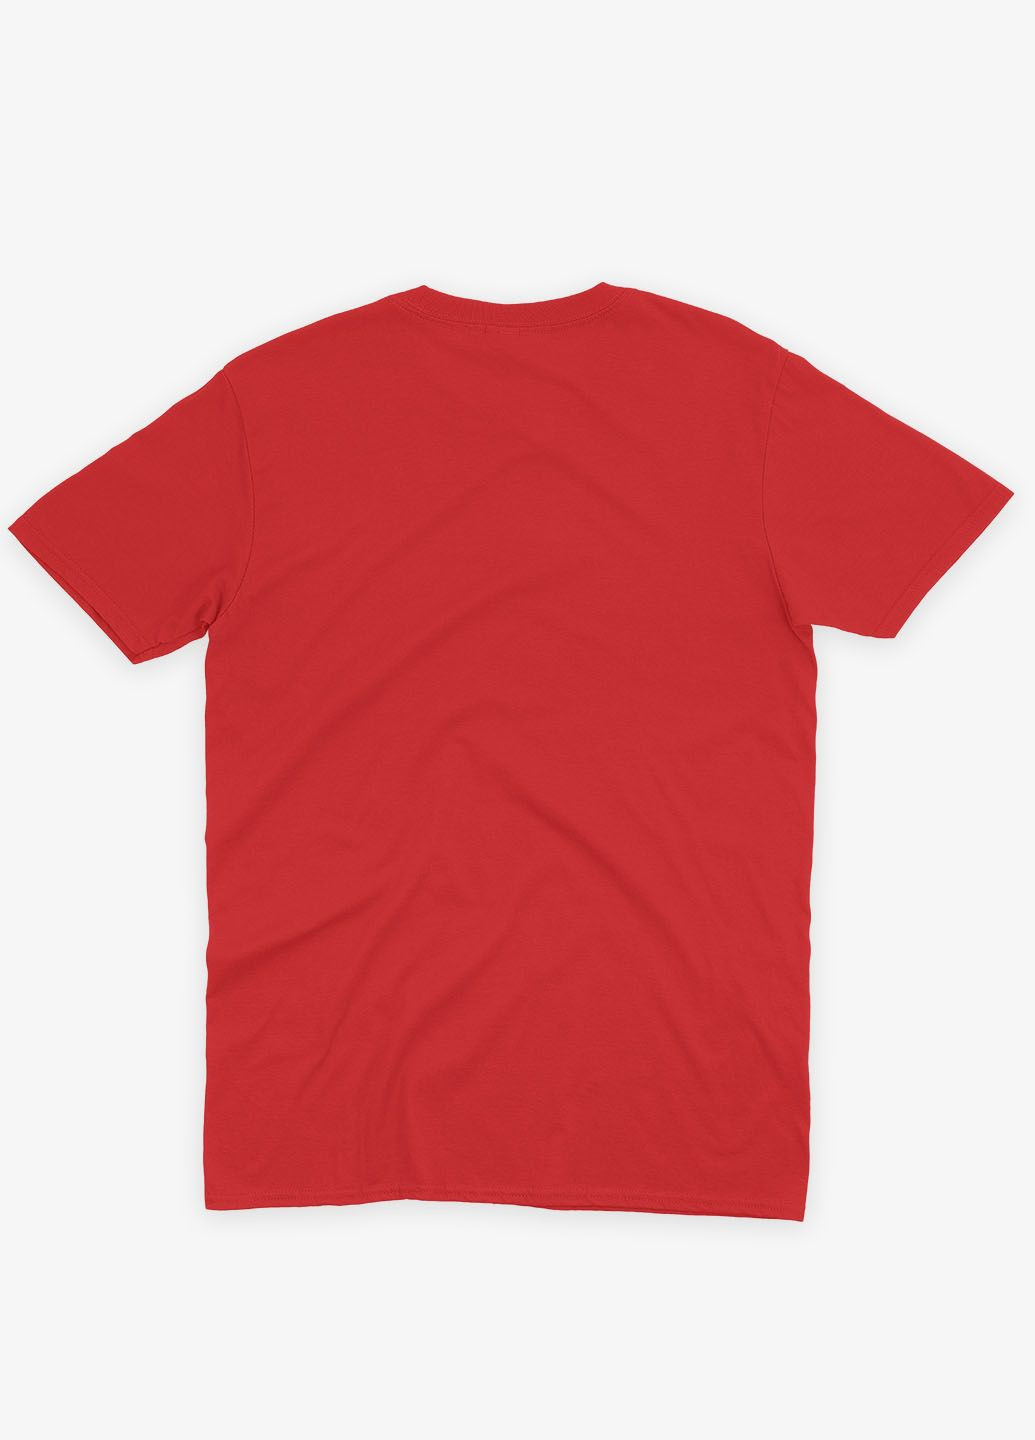 Красная демисезонная футболка для девочки с принтом супергероя - чудо-женщина (ts001-1-sre-006-006-003-g) Modno